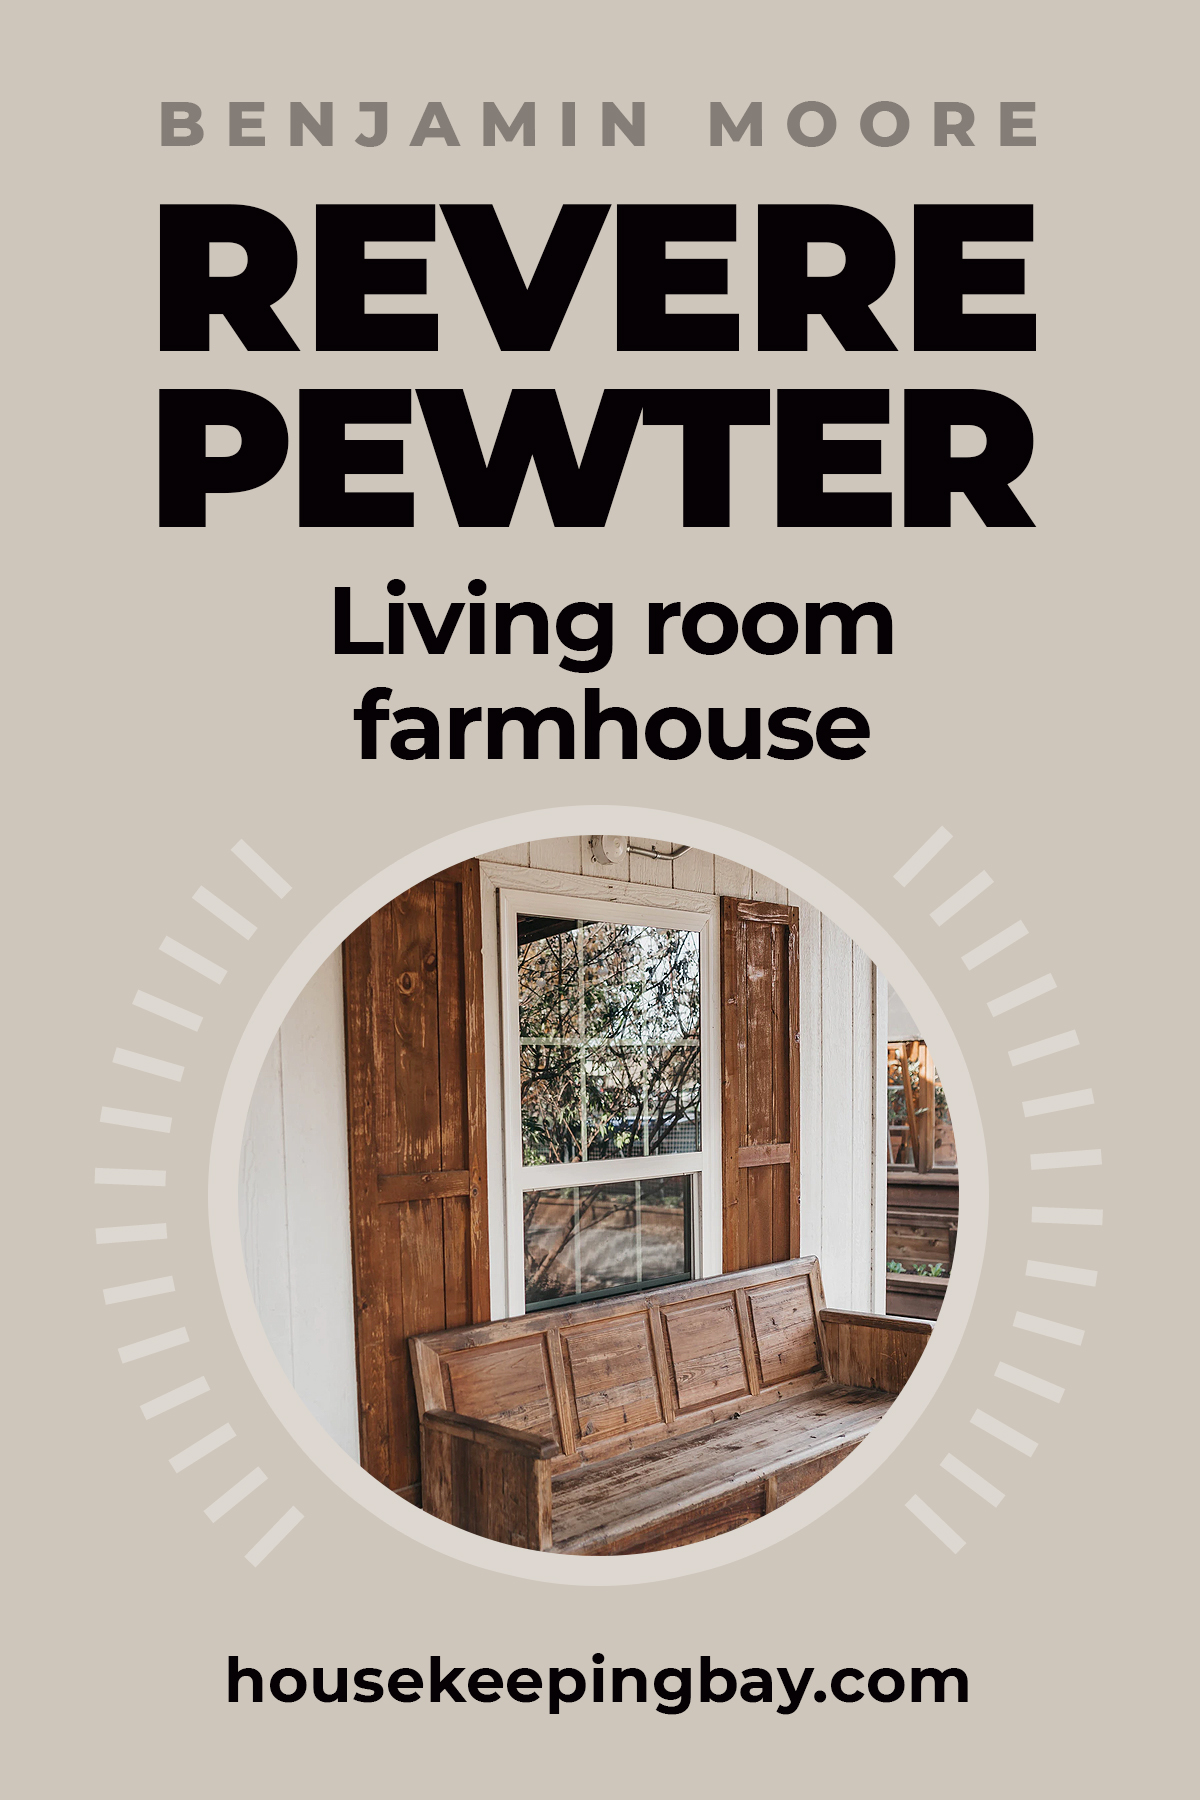 Revere pewter living room farmhouse